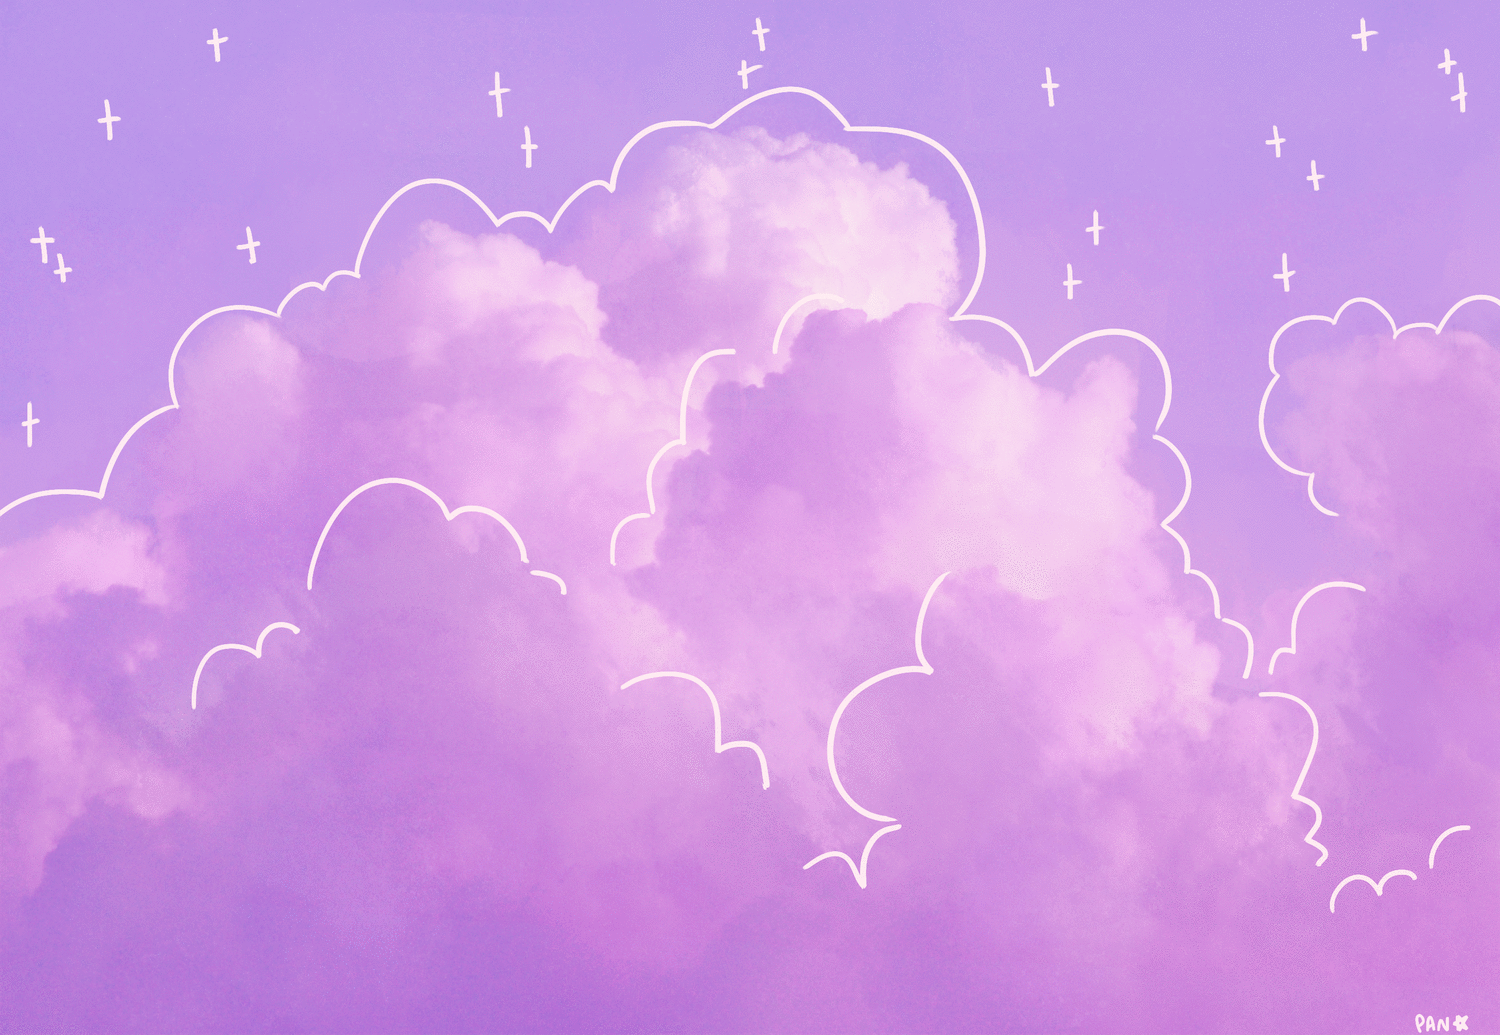 Aesthetic Cloud Wallpapers - Top Những Hình Ảnh Đẹp